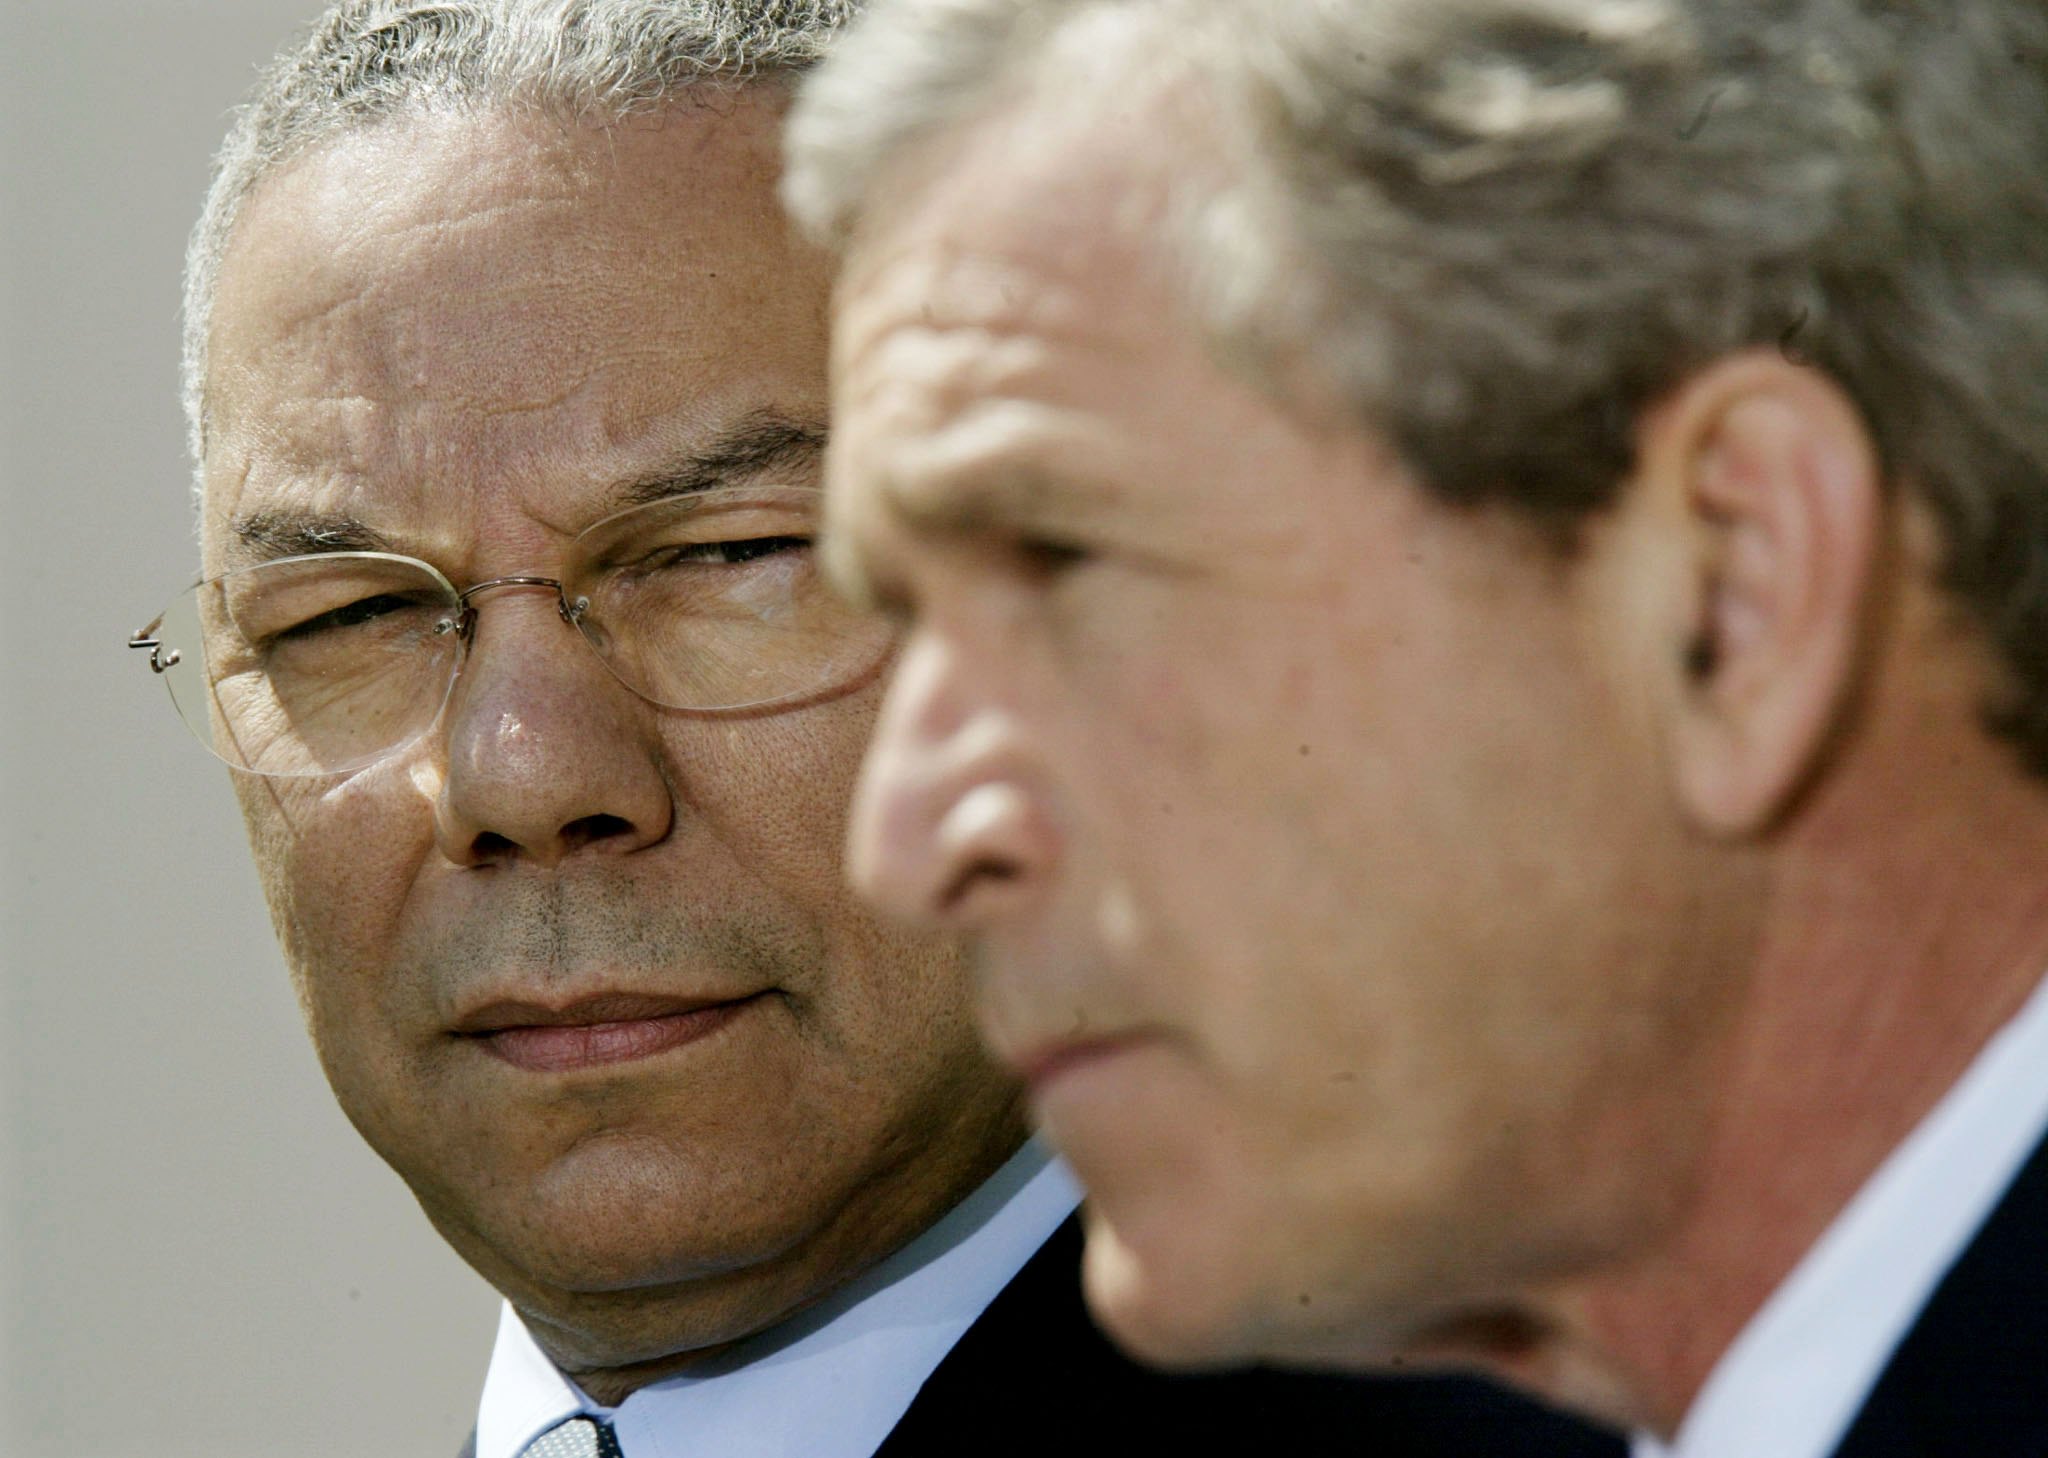 O presidente dos Estados Unidos, George W. Bush, fala sobre o Oriente Médio a partir do
 Rose Garden da Casa Branca como Secretário de Estado dos EUA Colin Powell
 (L) está ao seu lado em 4 de abril de 2002. Bush instruiu Powell a ir para
 o Oriente Médio para reviver as tentativas de cessar-fogo.  REUTERS / Kevin
 Lamarque

 KL / MMR